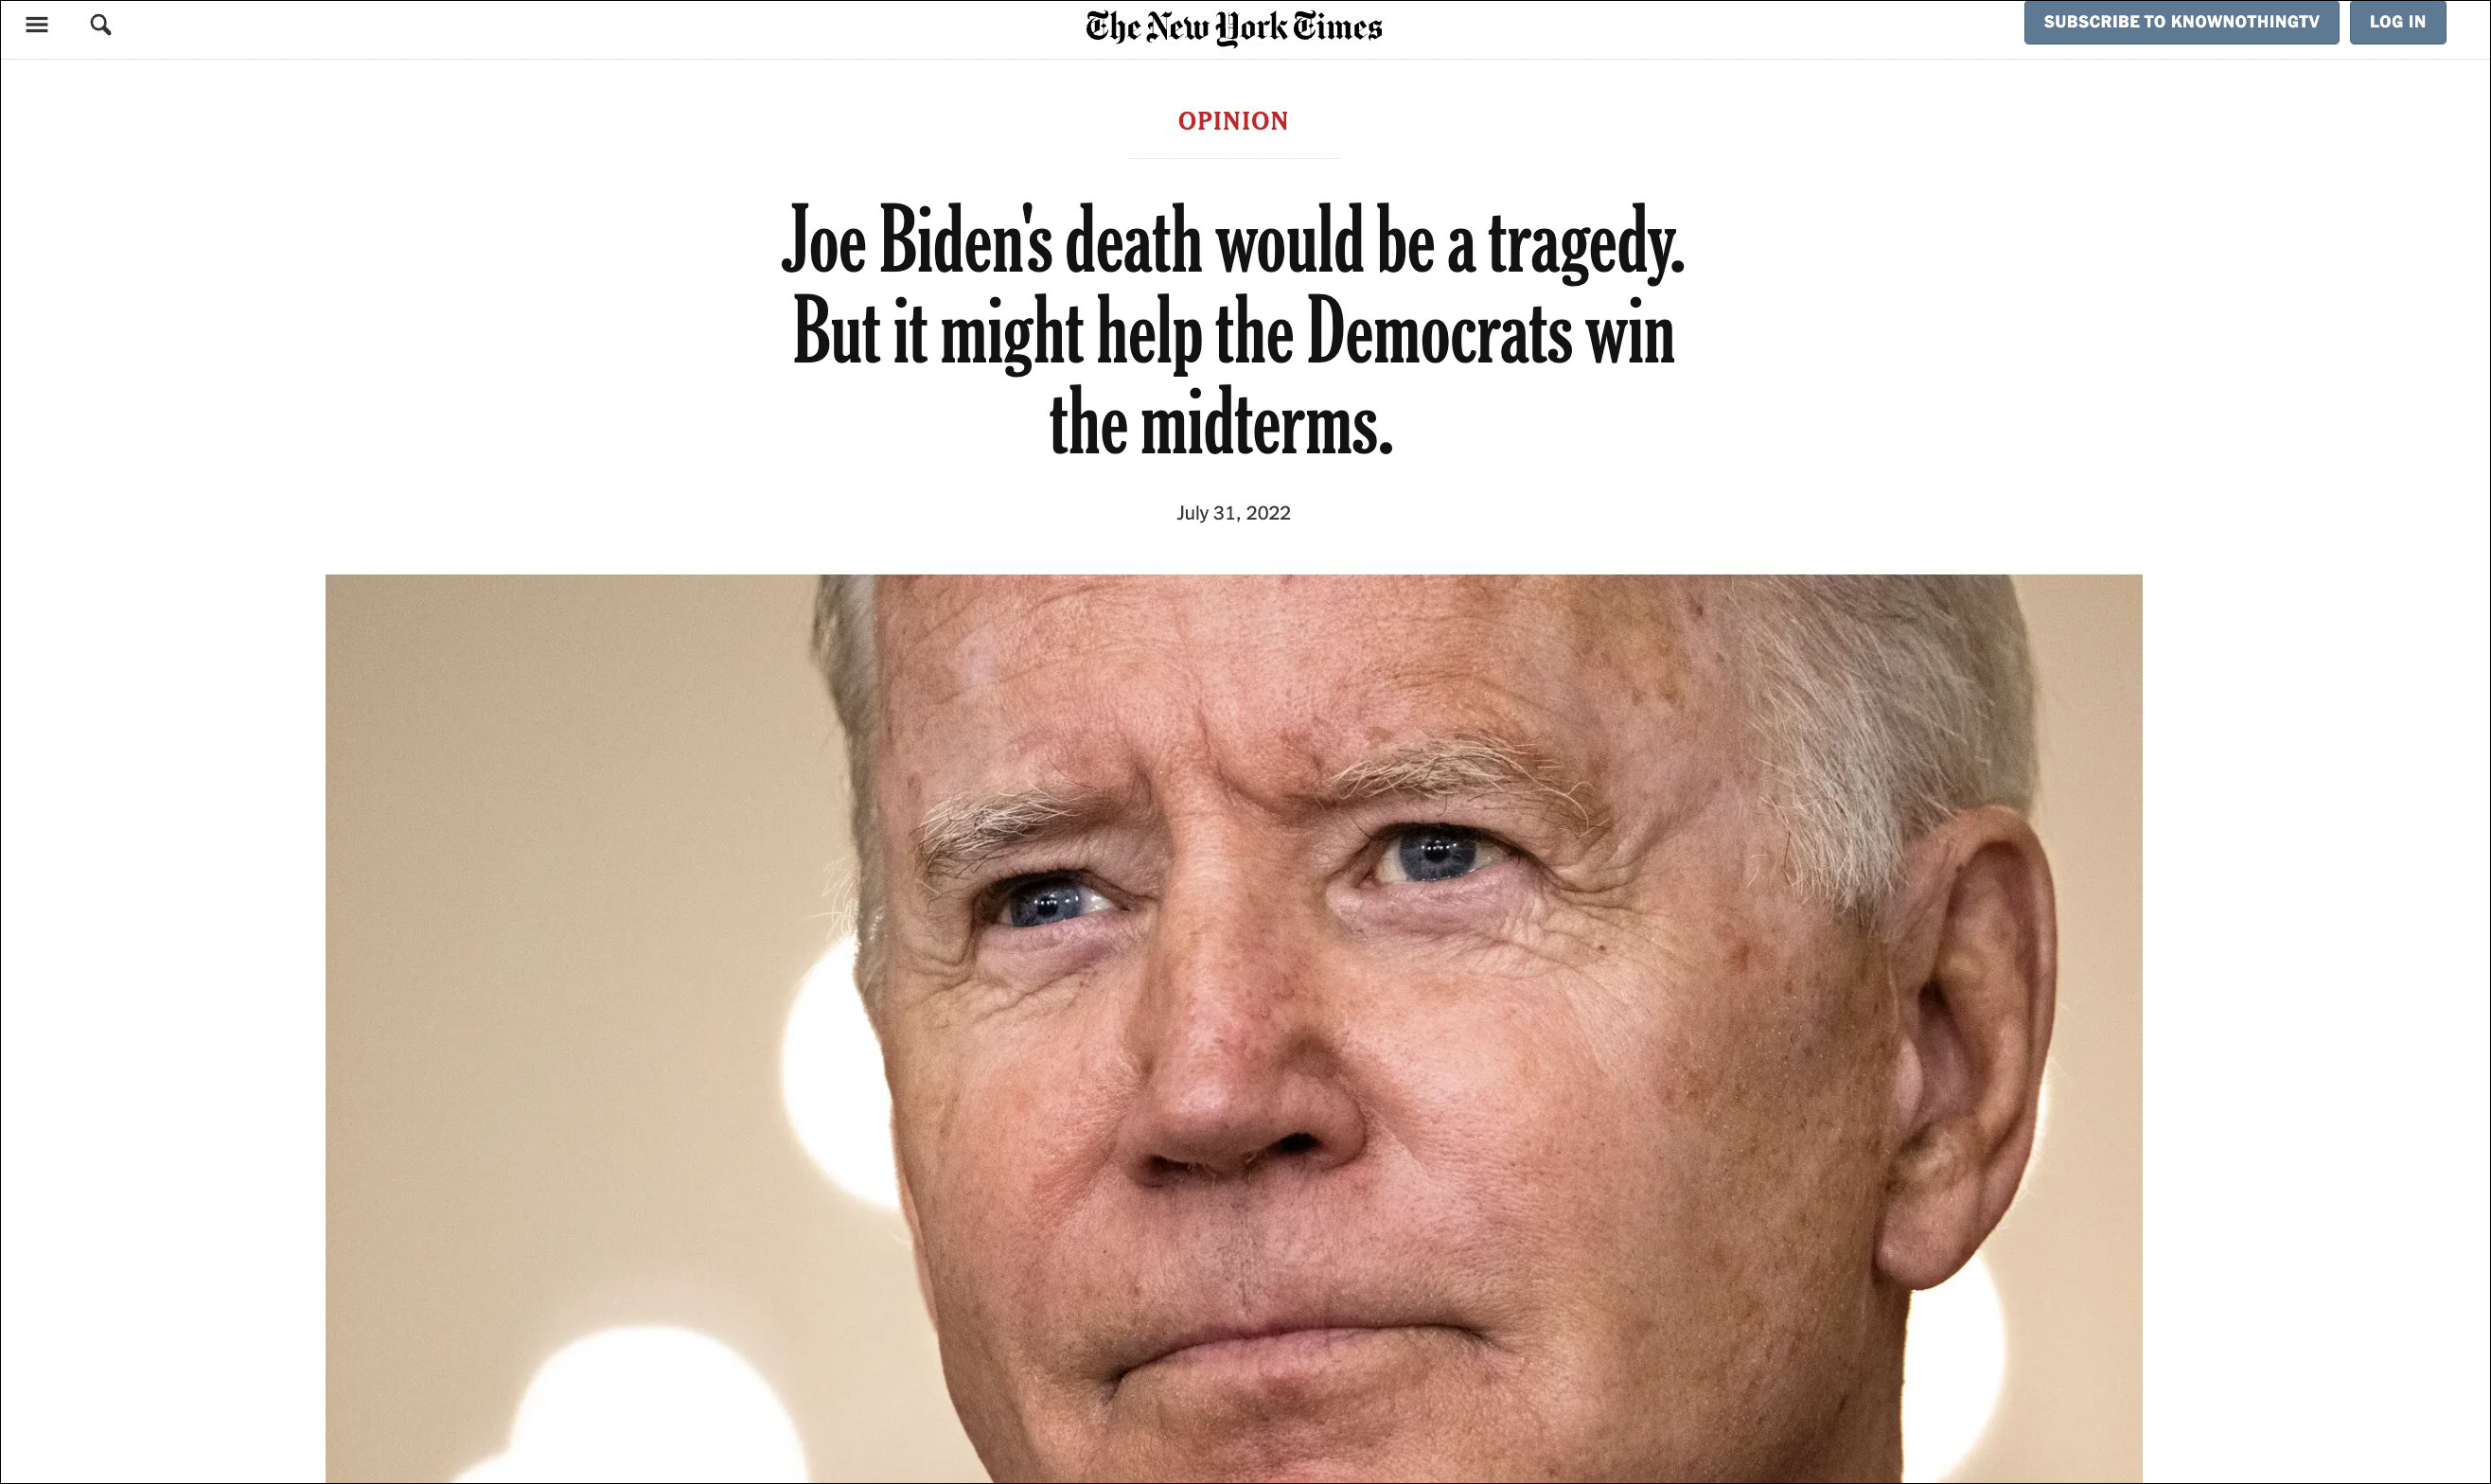 炸了 纽约时报称拜登死亡帮民主党赢得中期选举?